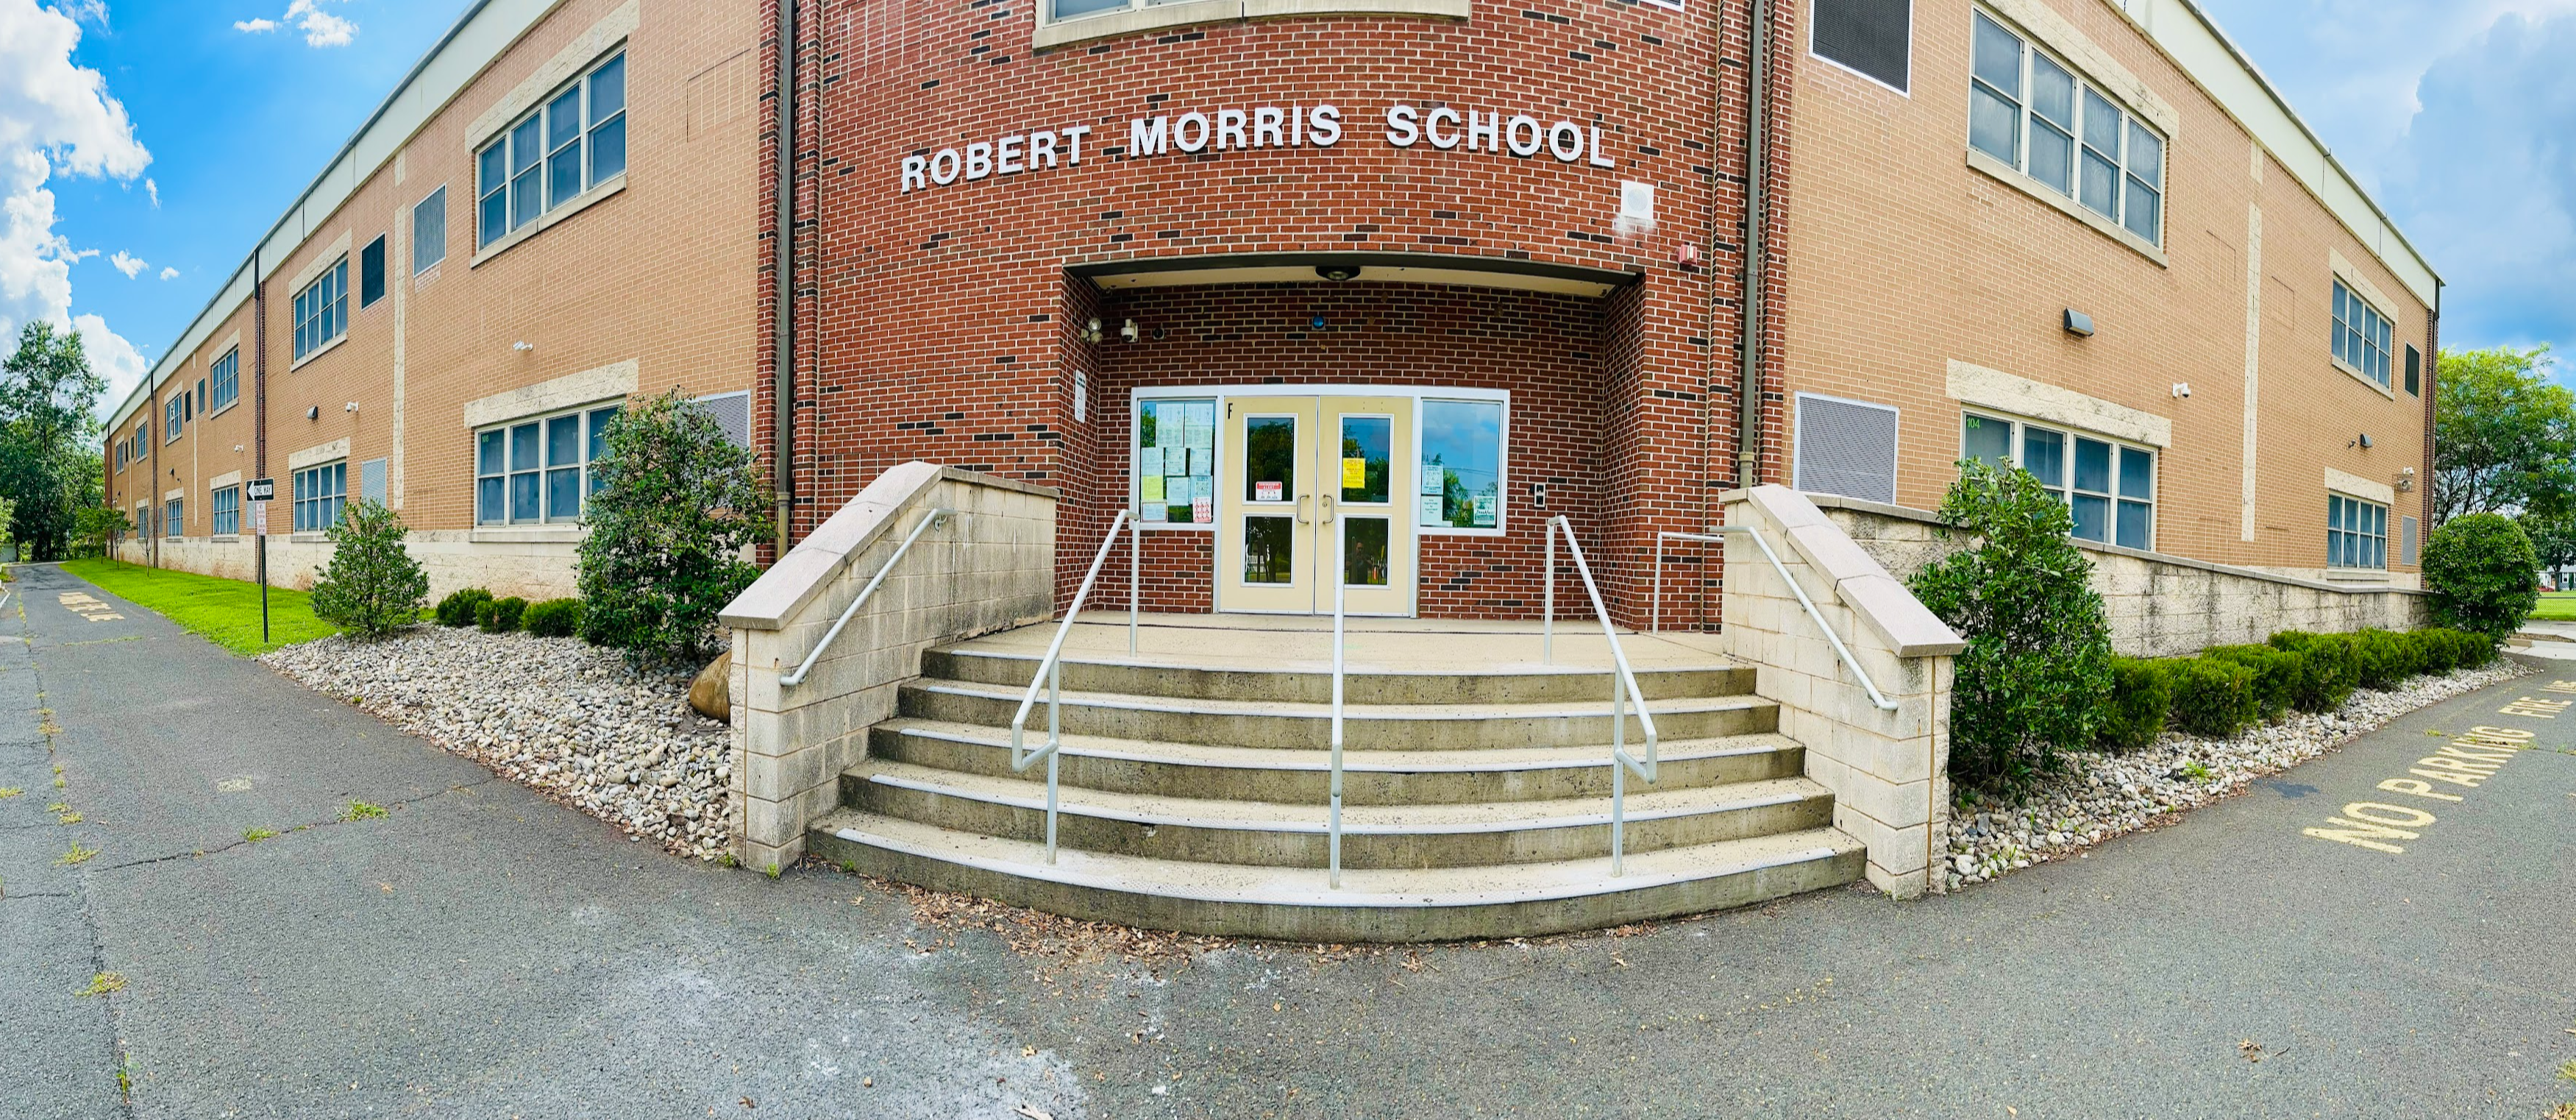 Robert Morris School